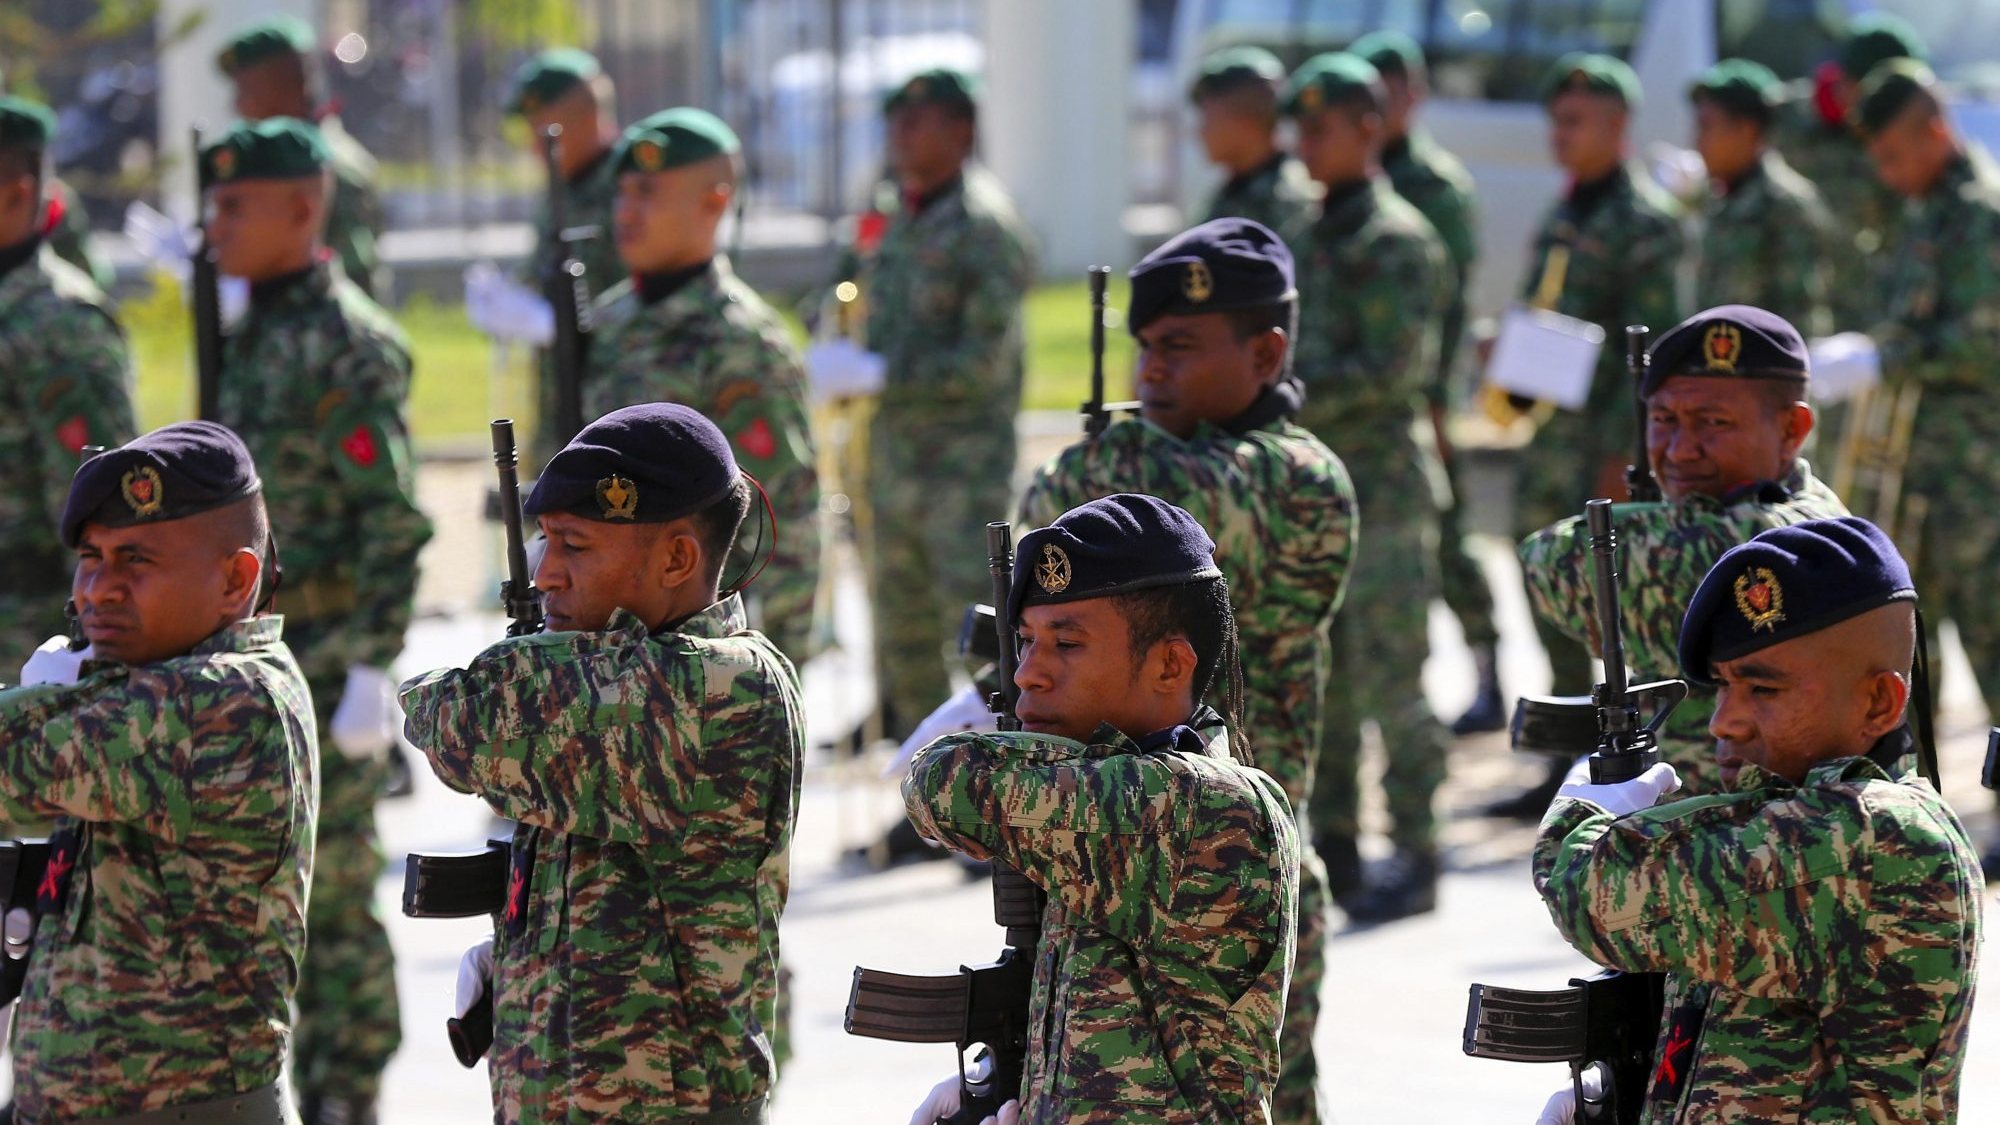 Além do exercício em Baucau, os Estados Unidos realizam três outros exercícios militares anuais com as F-FDTL, acolhendo vários militares timorenses nos Estados Unidos para formação militar profissional e em língua inglesa